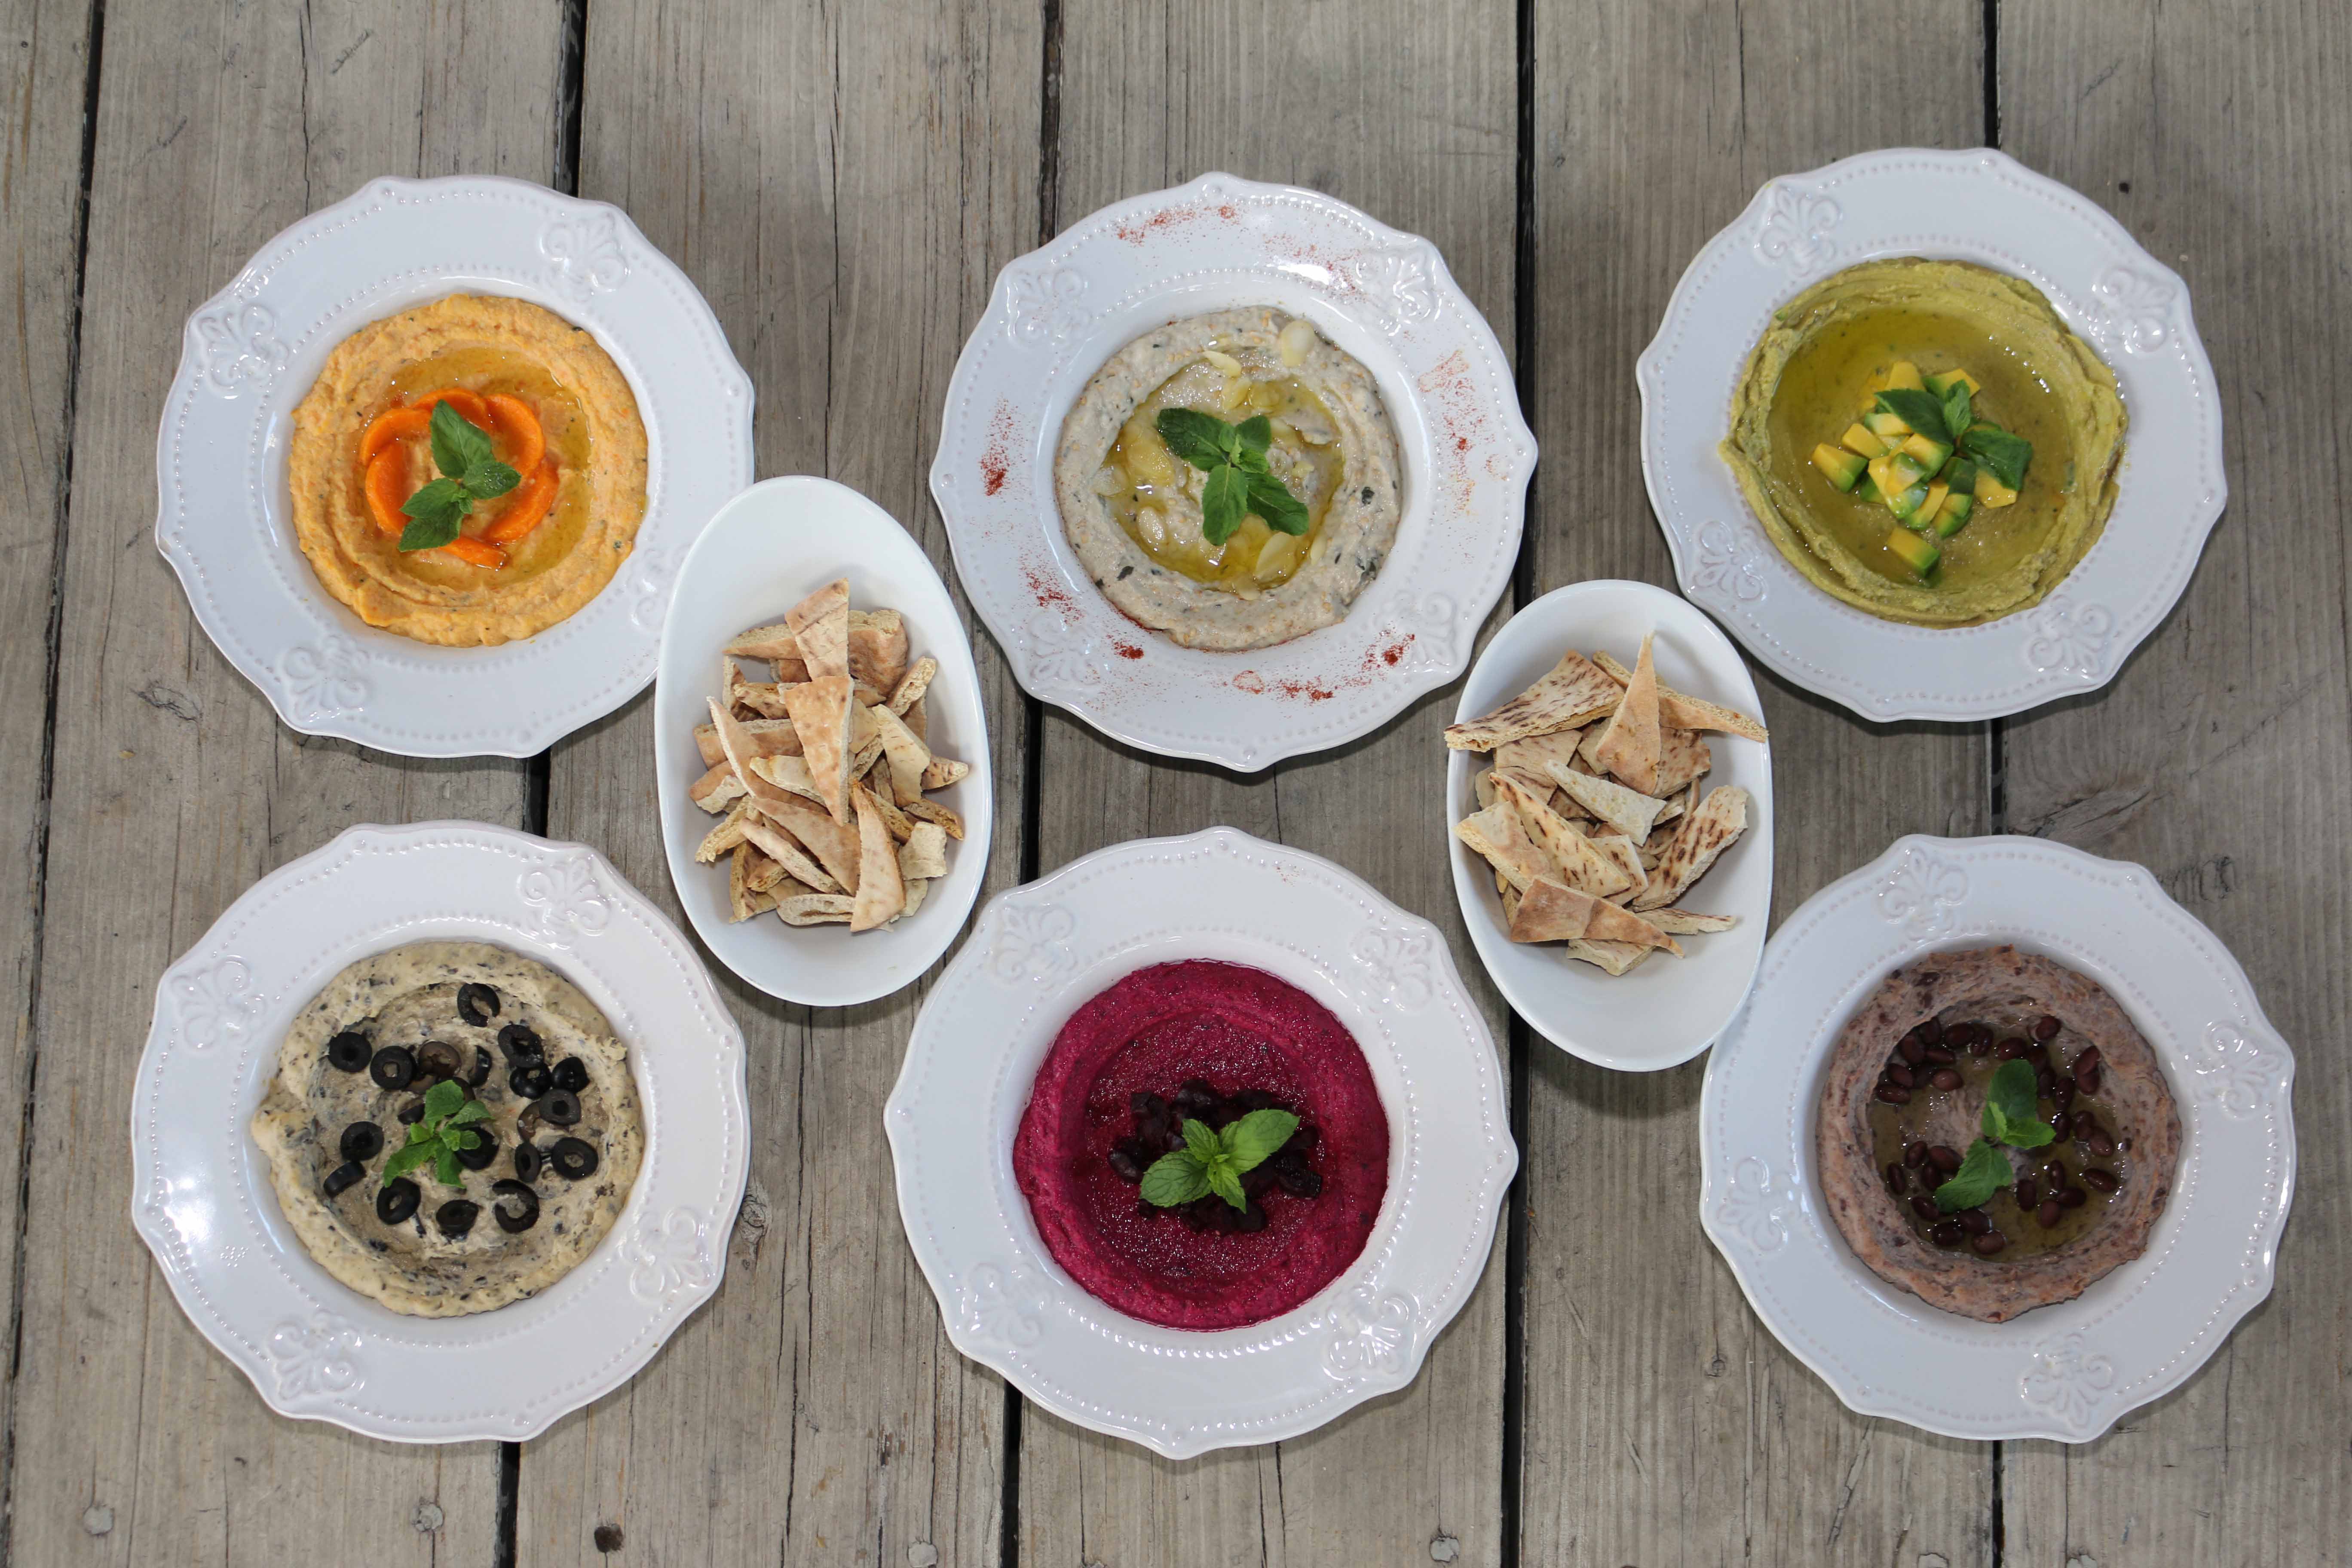 El restaurante Kibbeh presenta innovadoras opciones de hummus